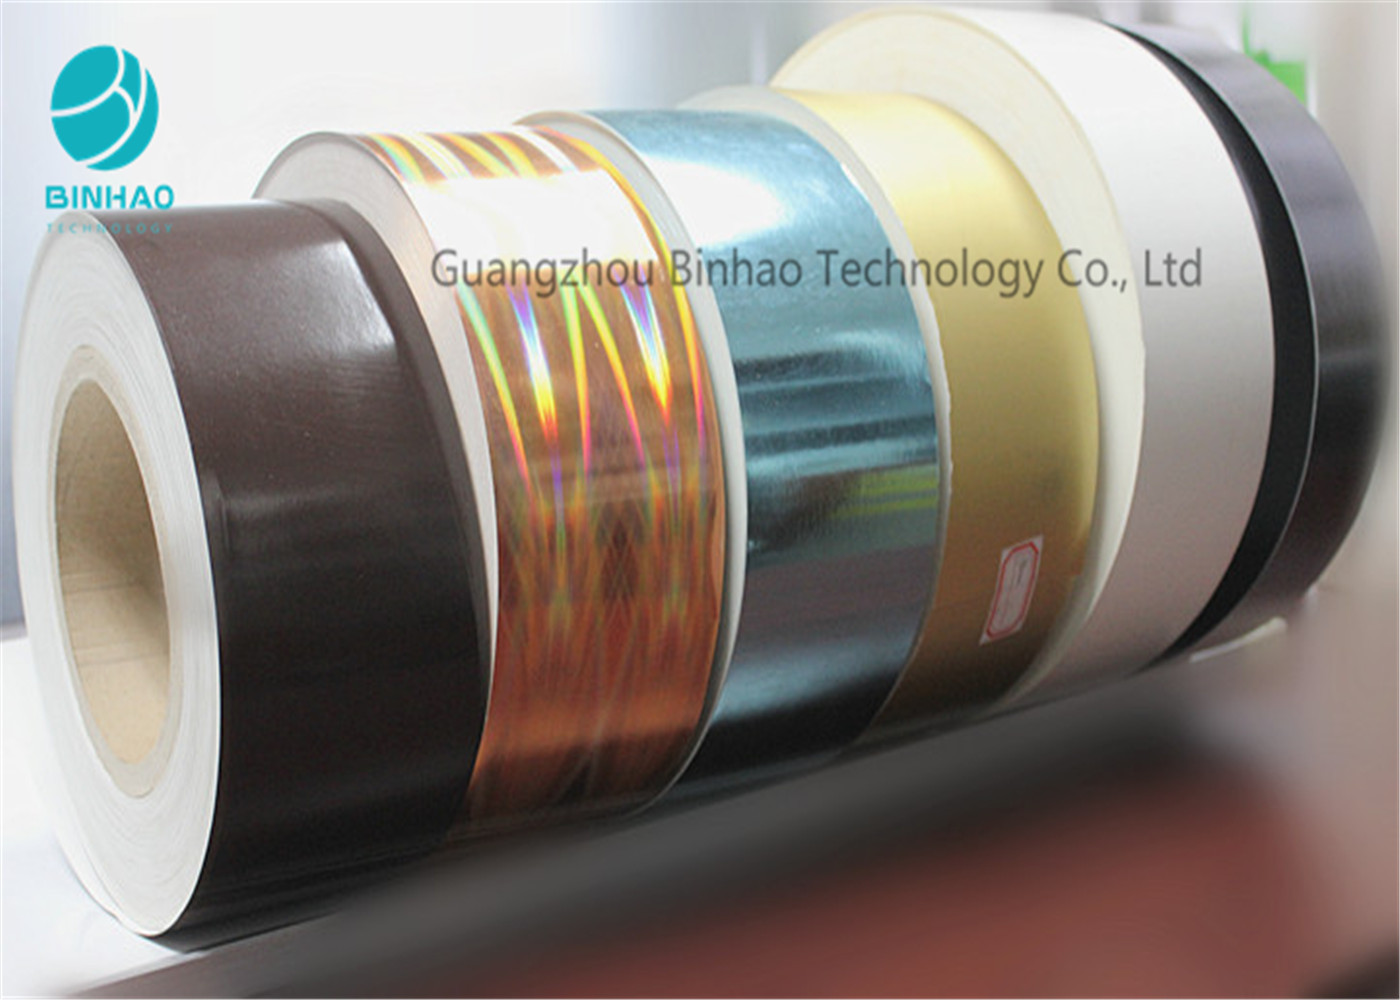 ورقة ملونة مطبوعة ورقة التبغ الورق الداخلي مع 120MM الداخلية الأساسية